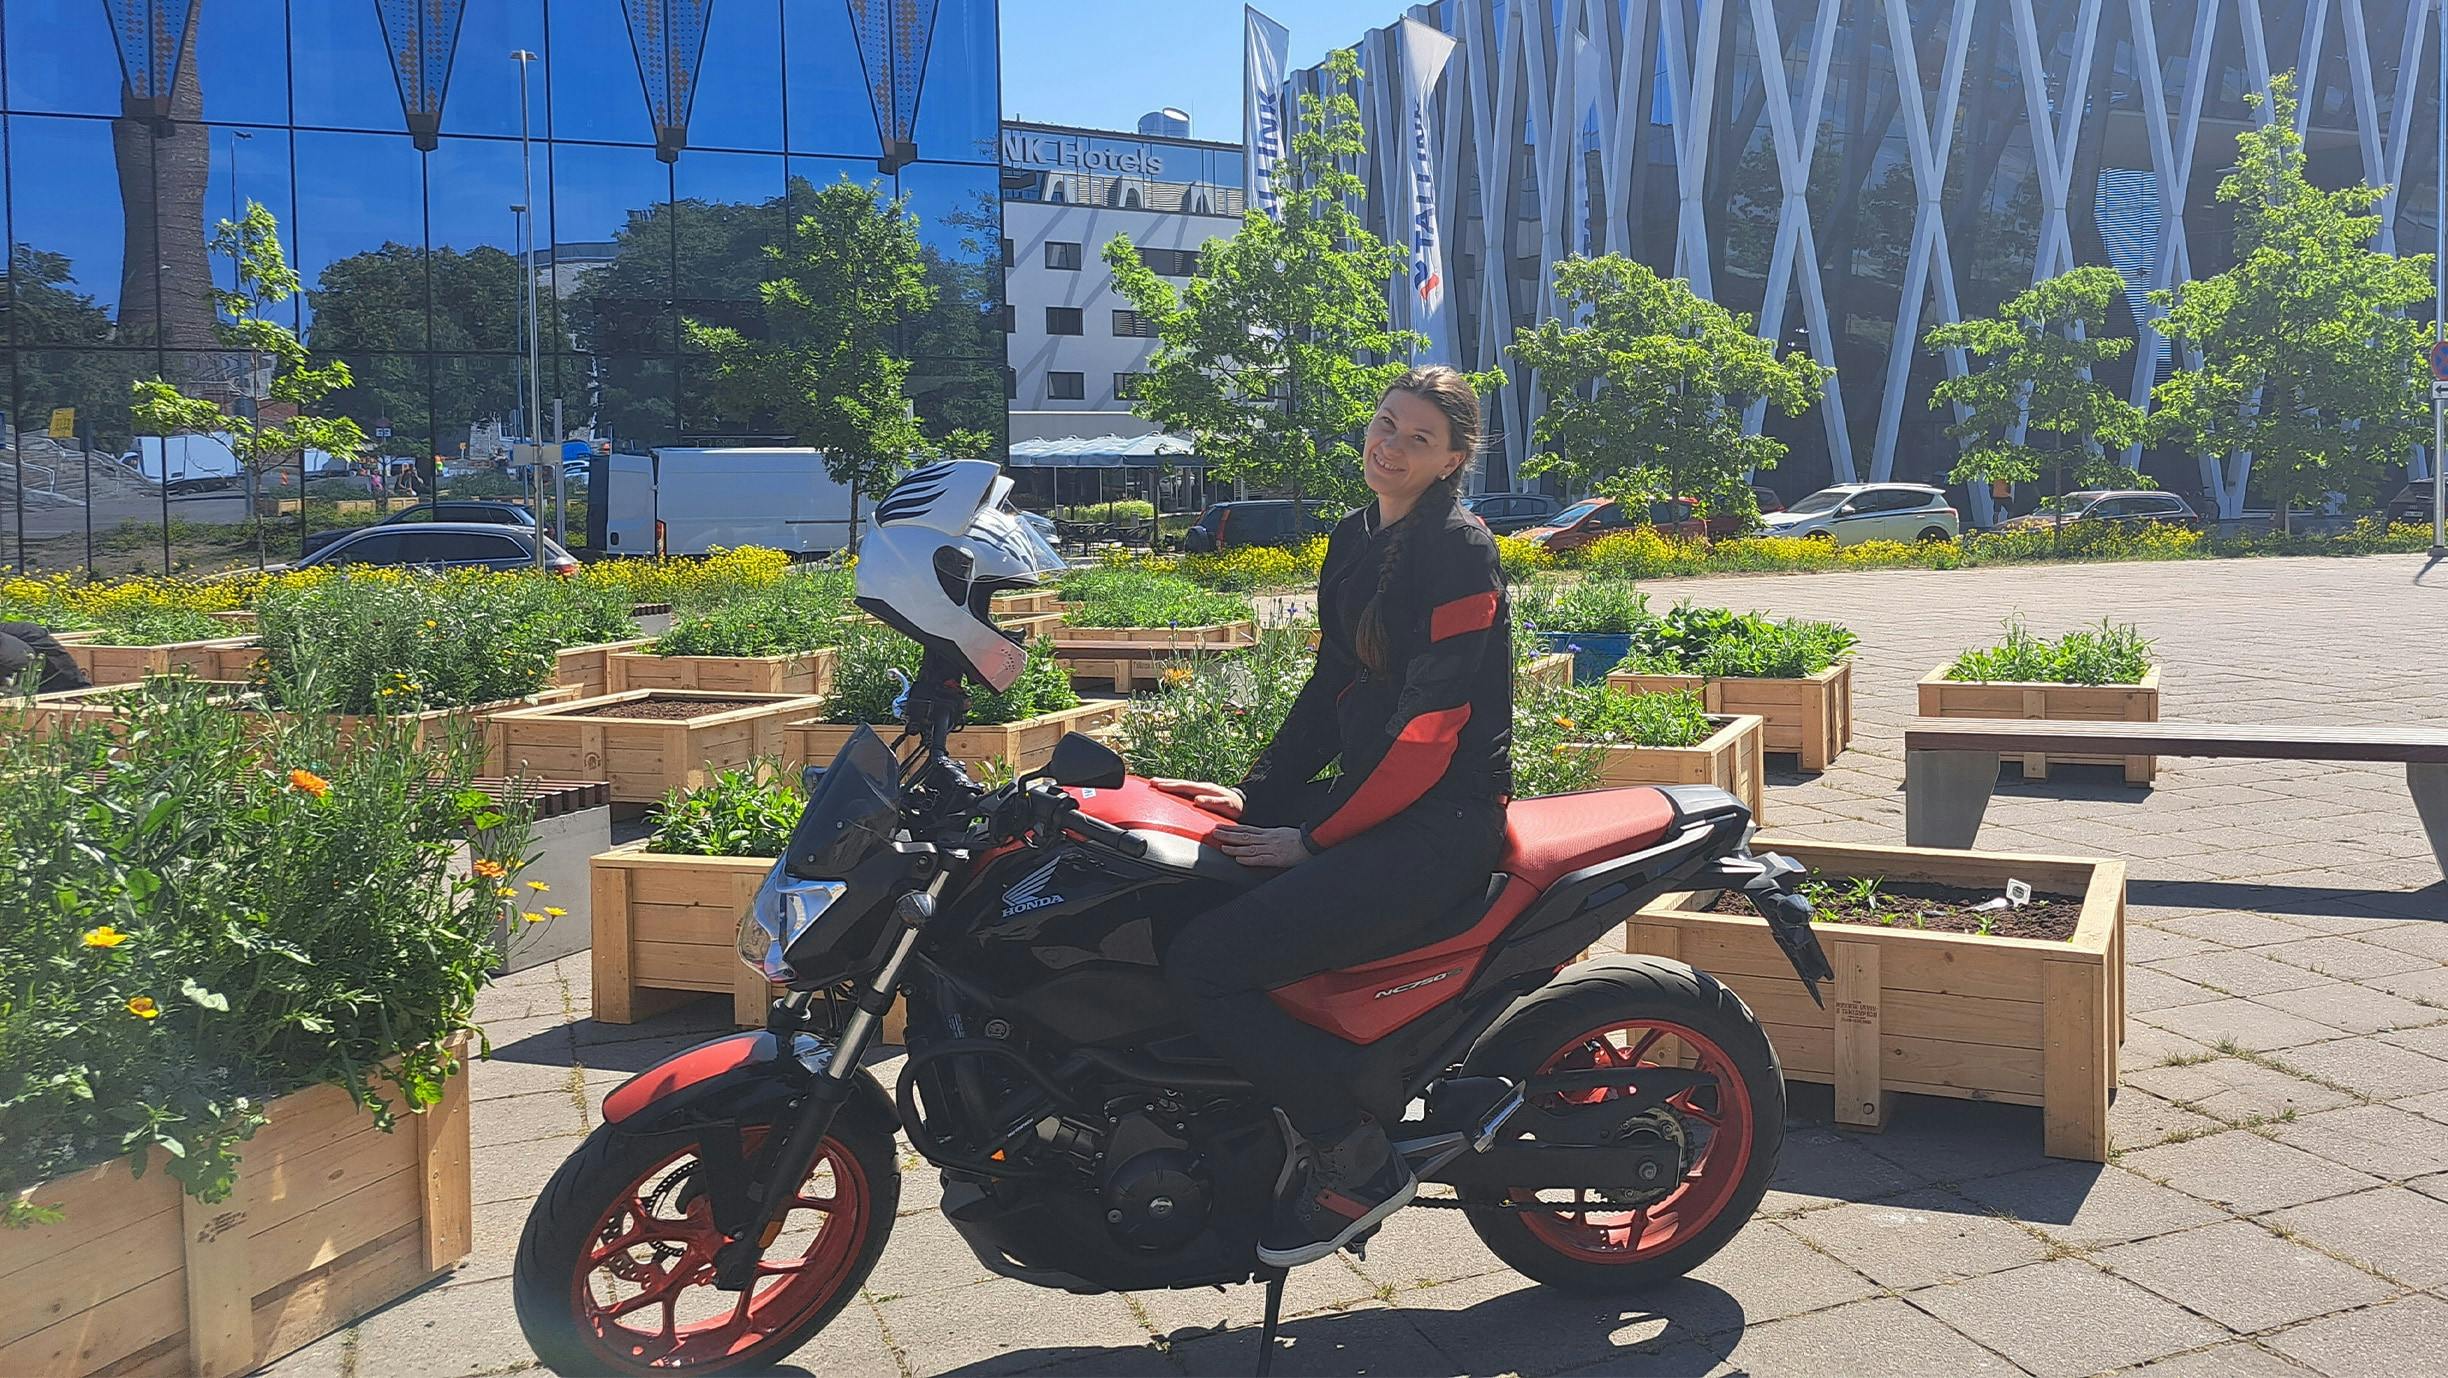 Jana Mitunevitš moottoripyörän kanssa